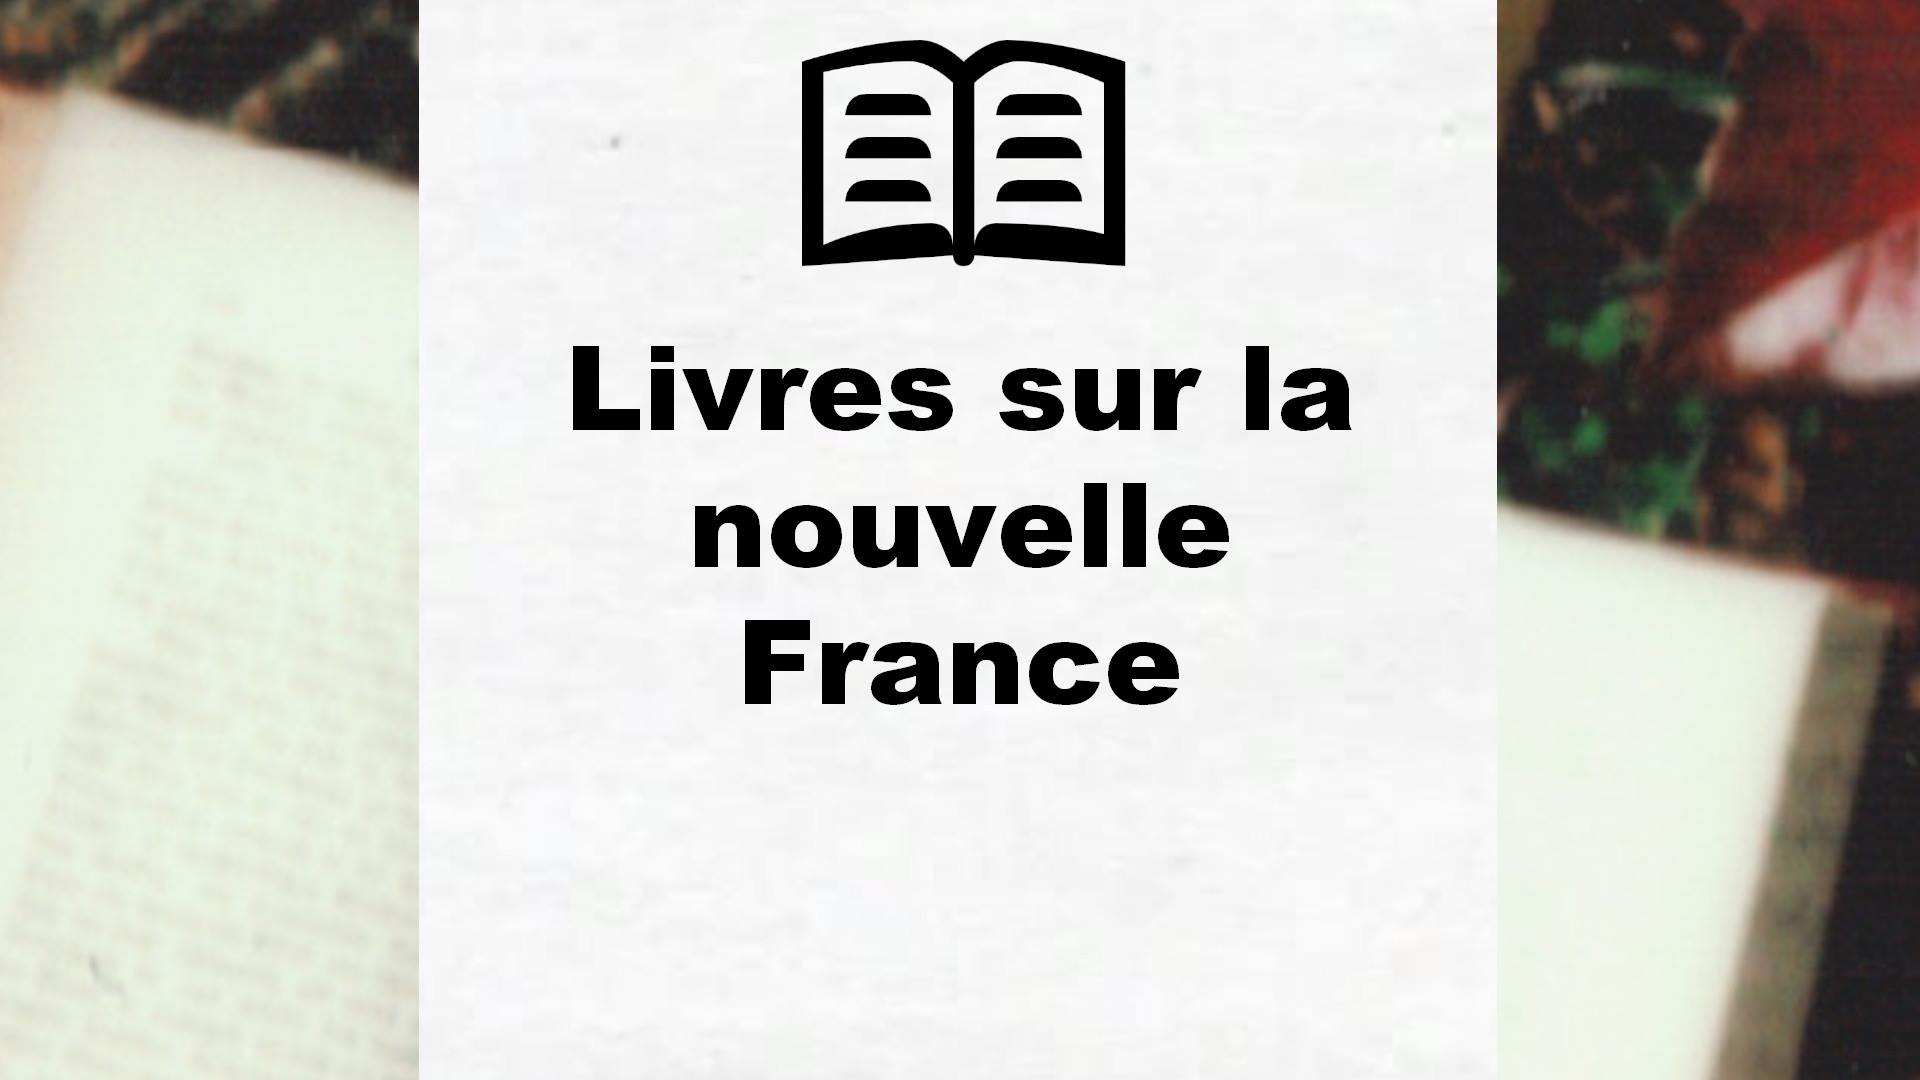 Livres sur la nouvelle France